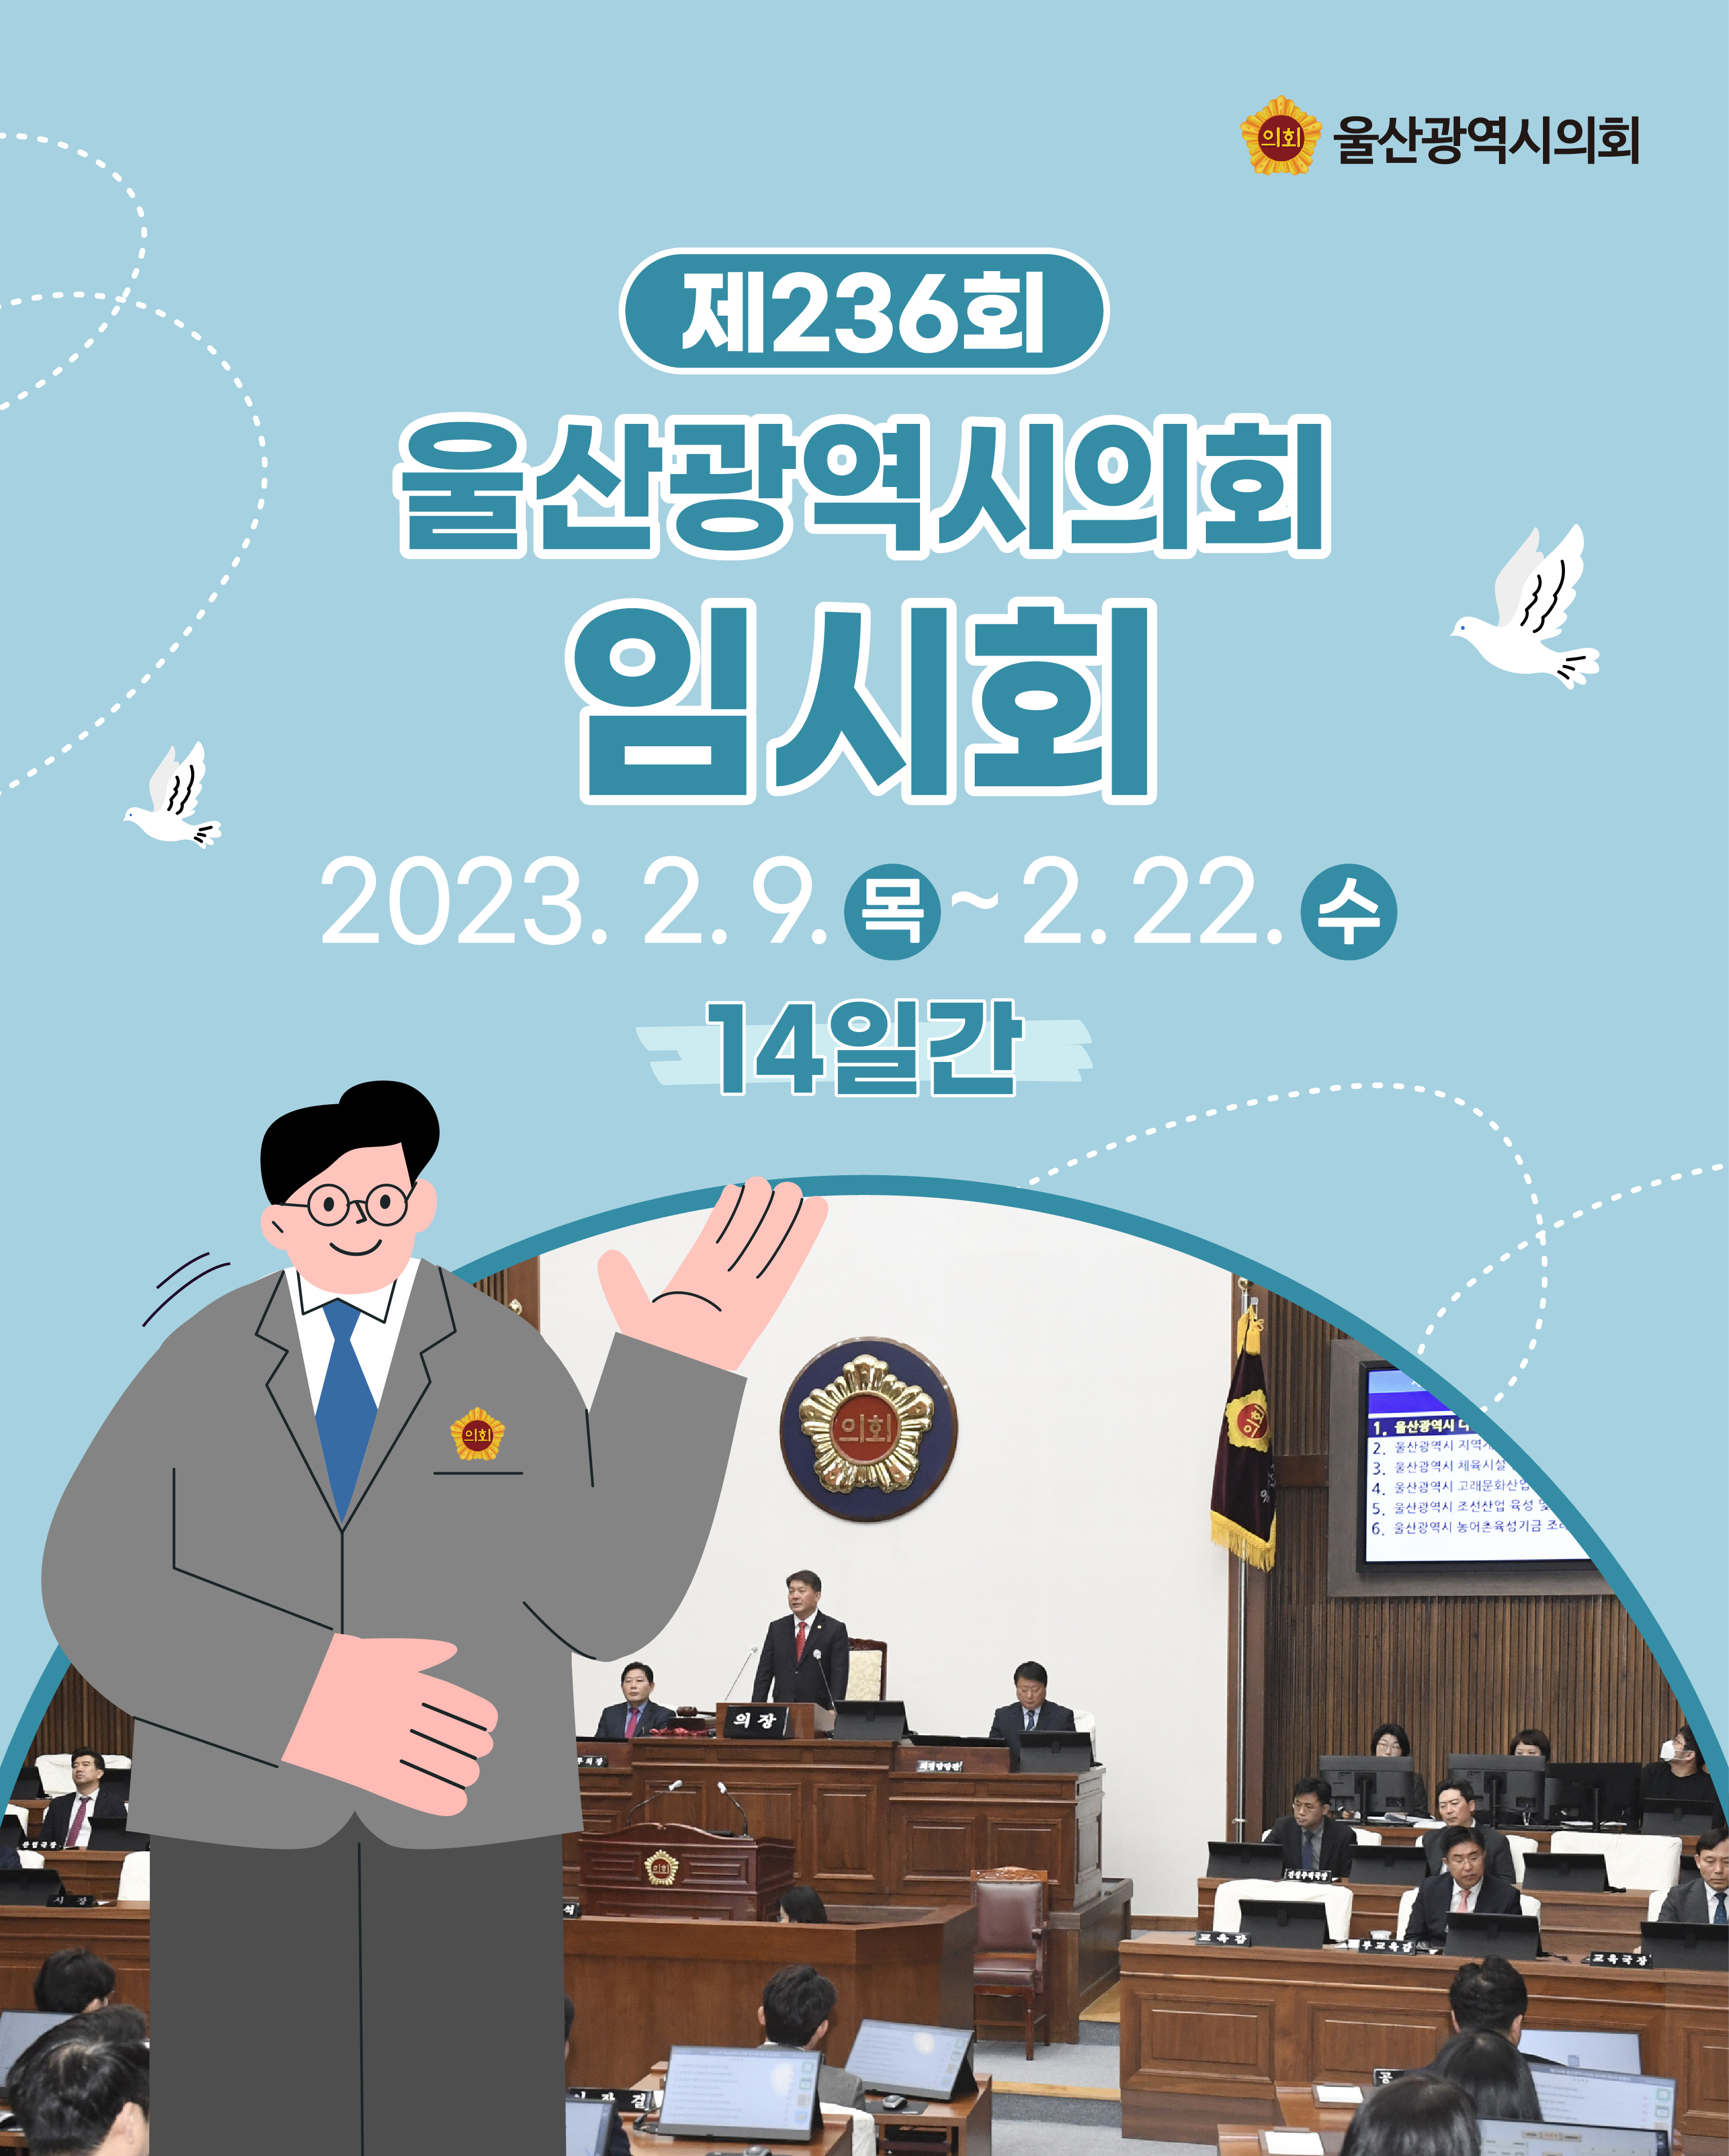 제236회 울산광역시의회 임시회
2023.2.9. ~ 2.22.[14일간]